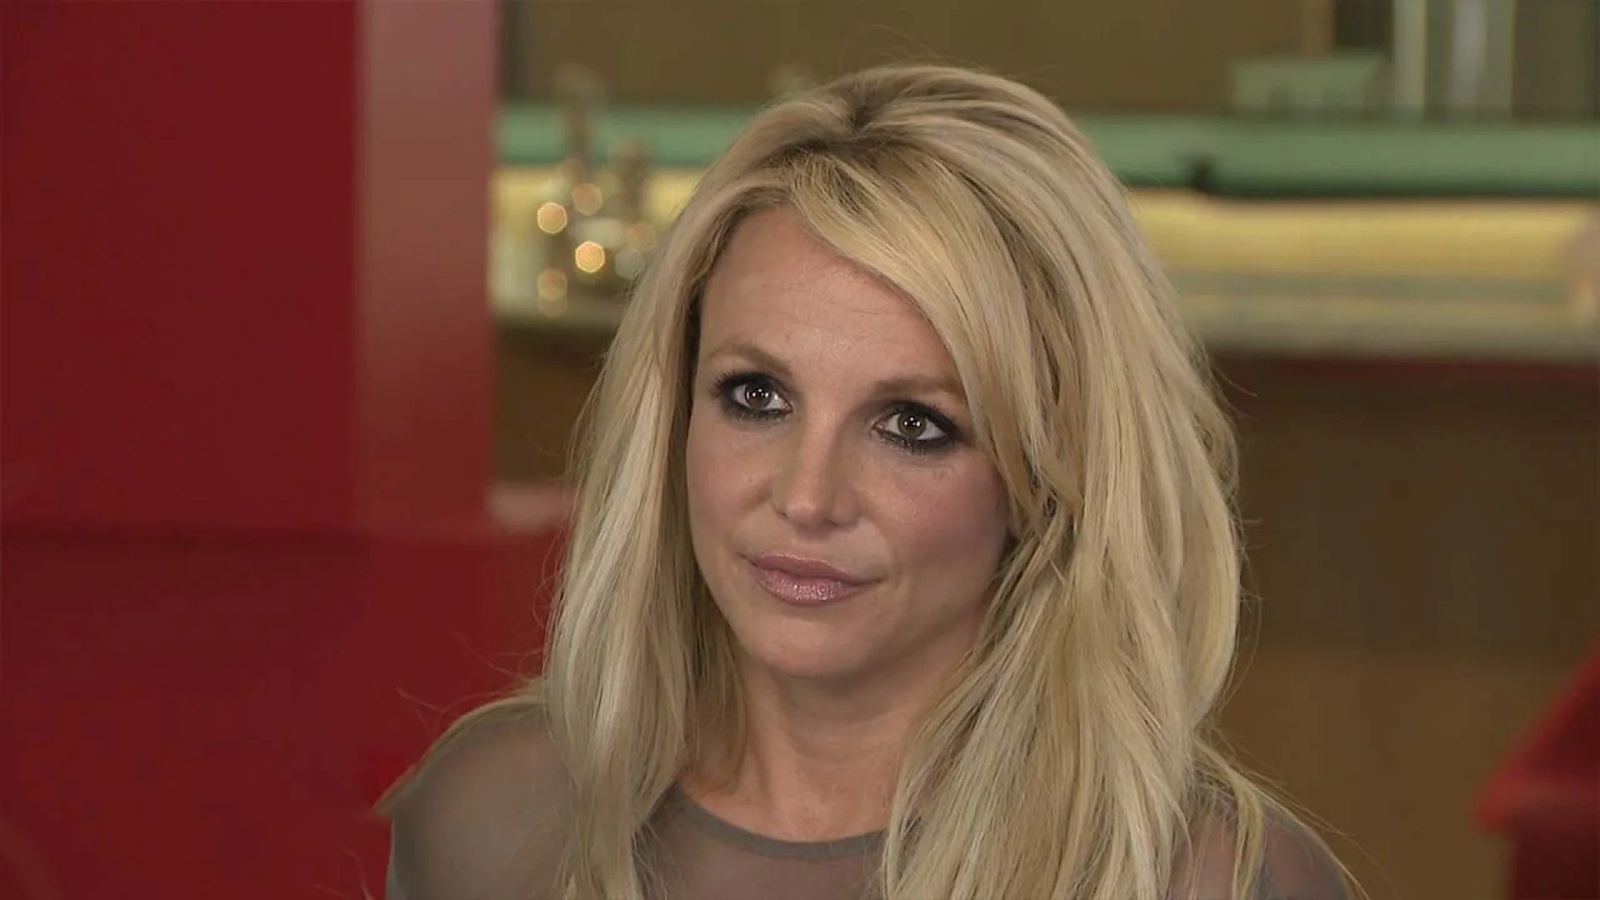 Britney Spears: 'I titoli sul mio passato sono sciocchi e stupidi, sono andata avanti'